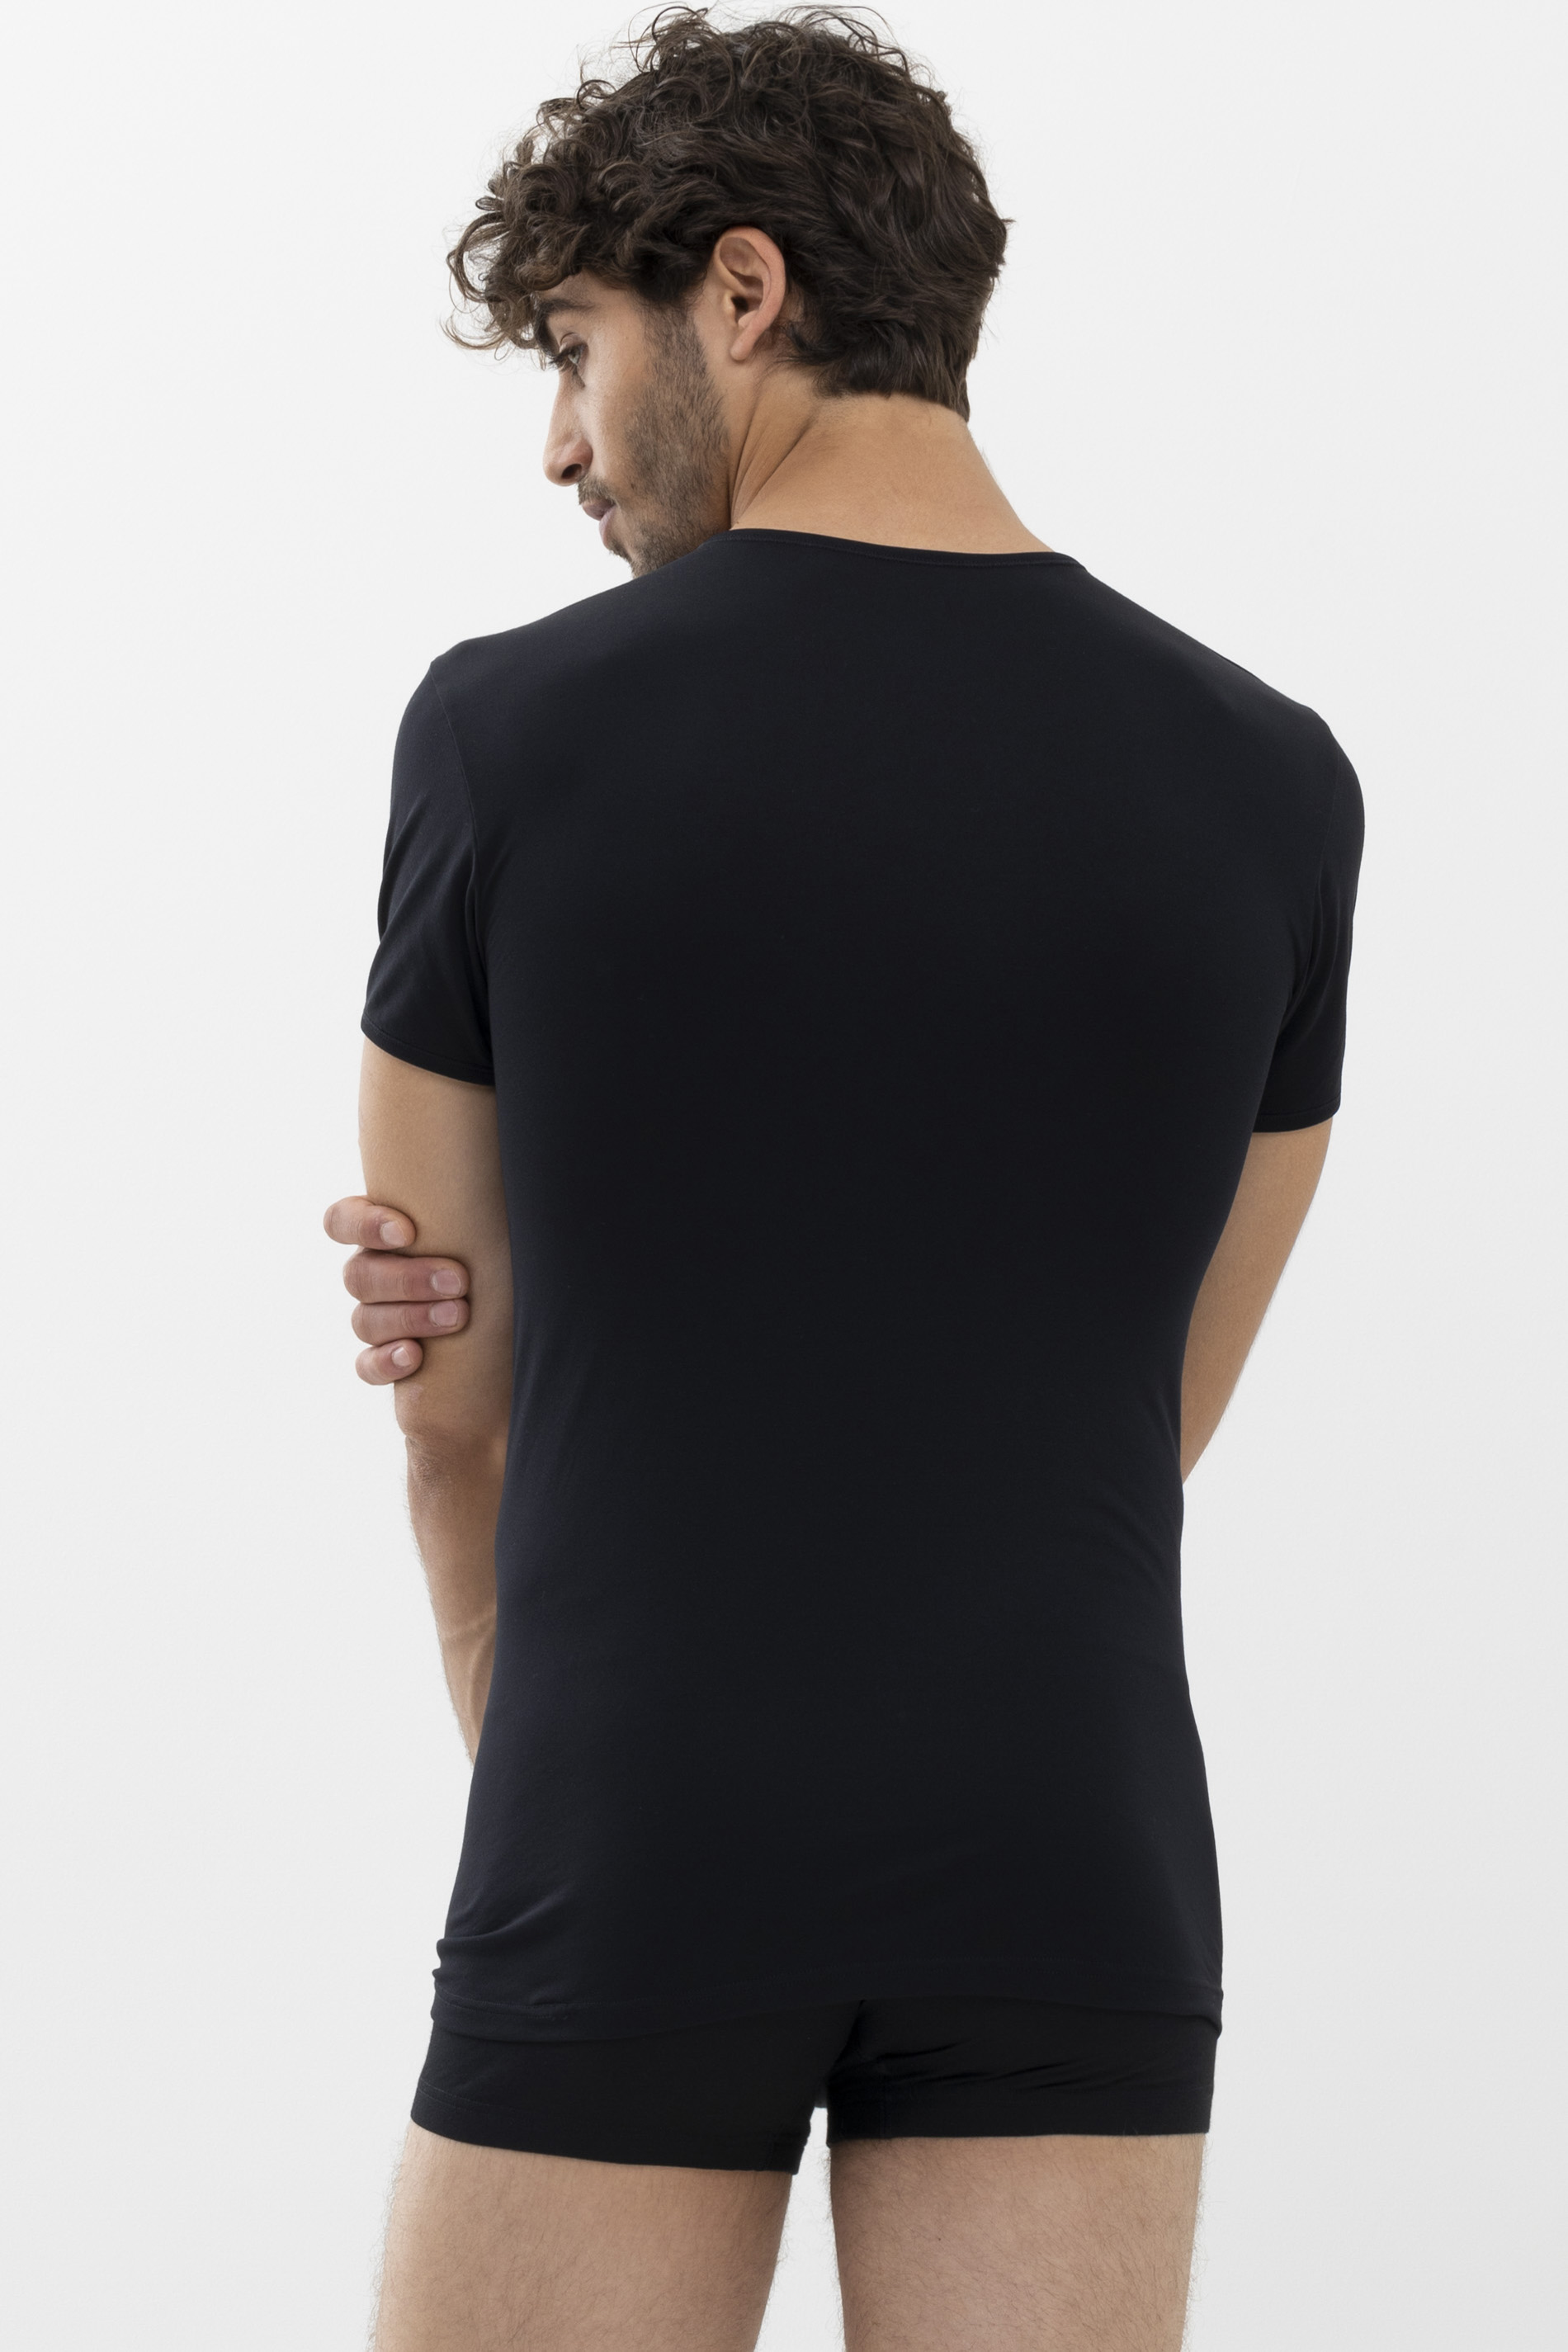 Shirt Zwart Serie Software Achteraanzicht | mey®